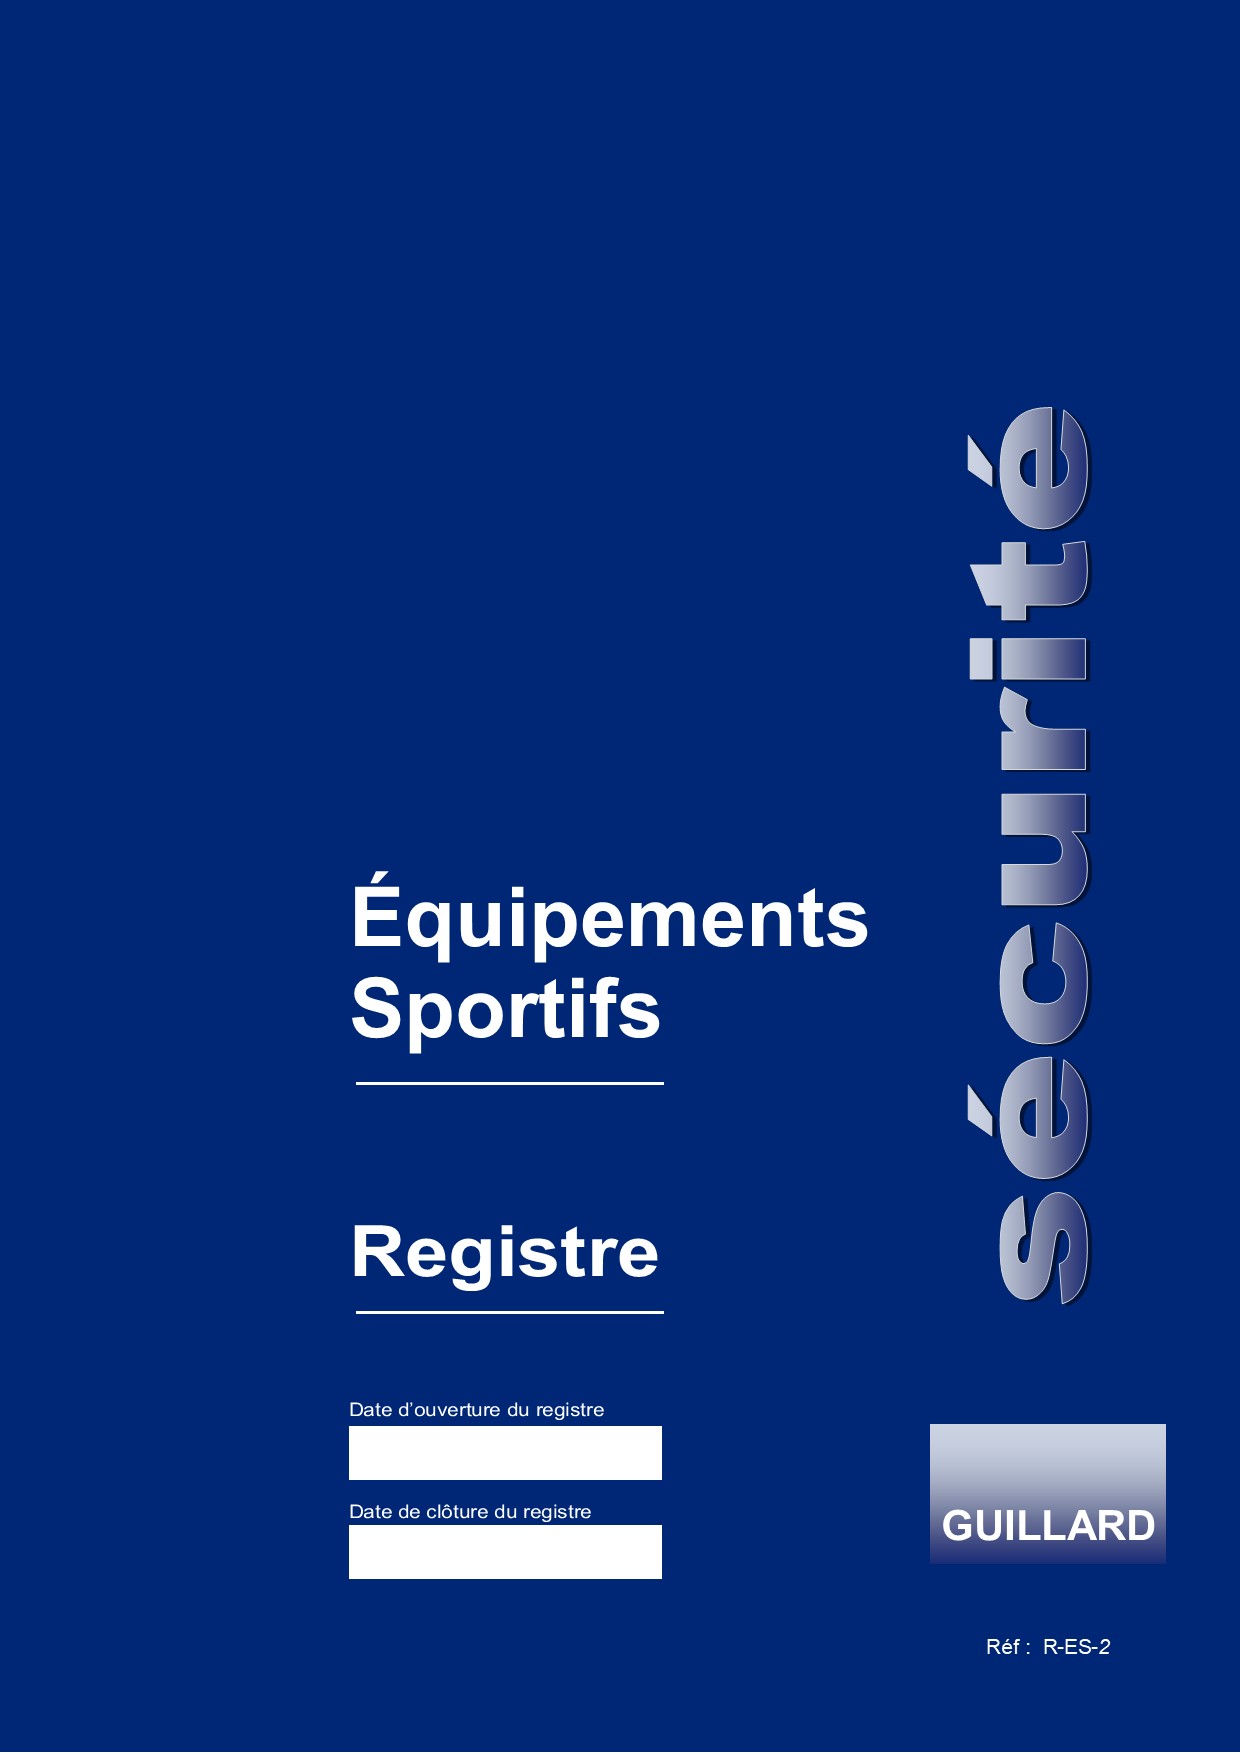 Registre de securite pour equipements sportifs : buts de foot-ball, basket-ball, hand-ball, hockey, rugby, volley-ball - R.ES 2 - Edition GUILLARD